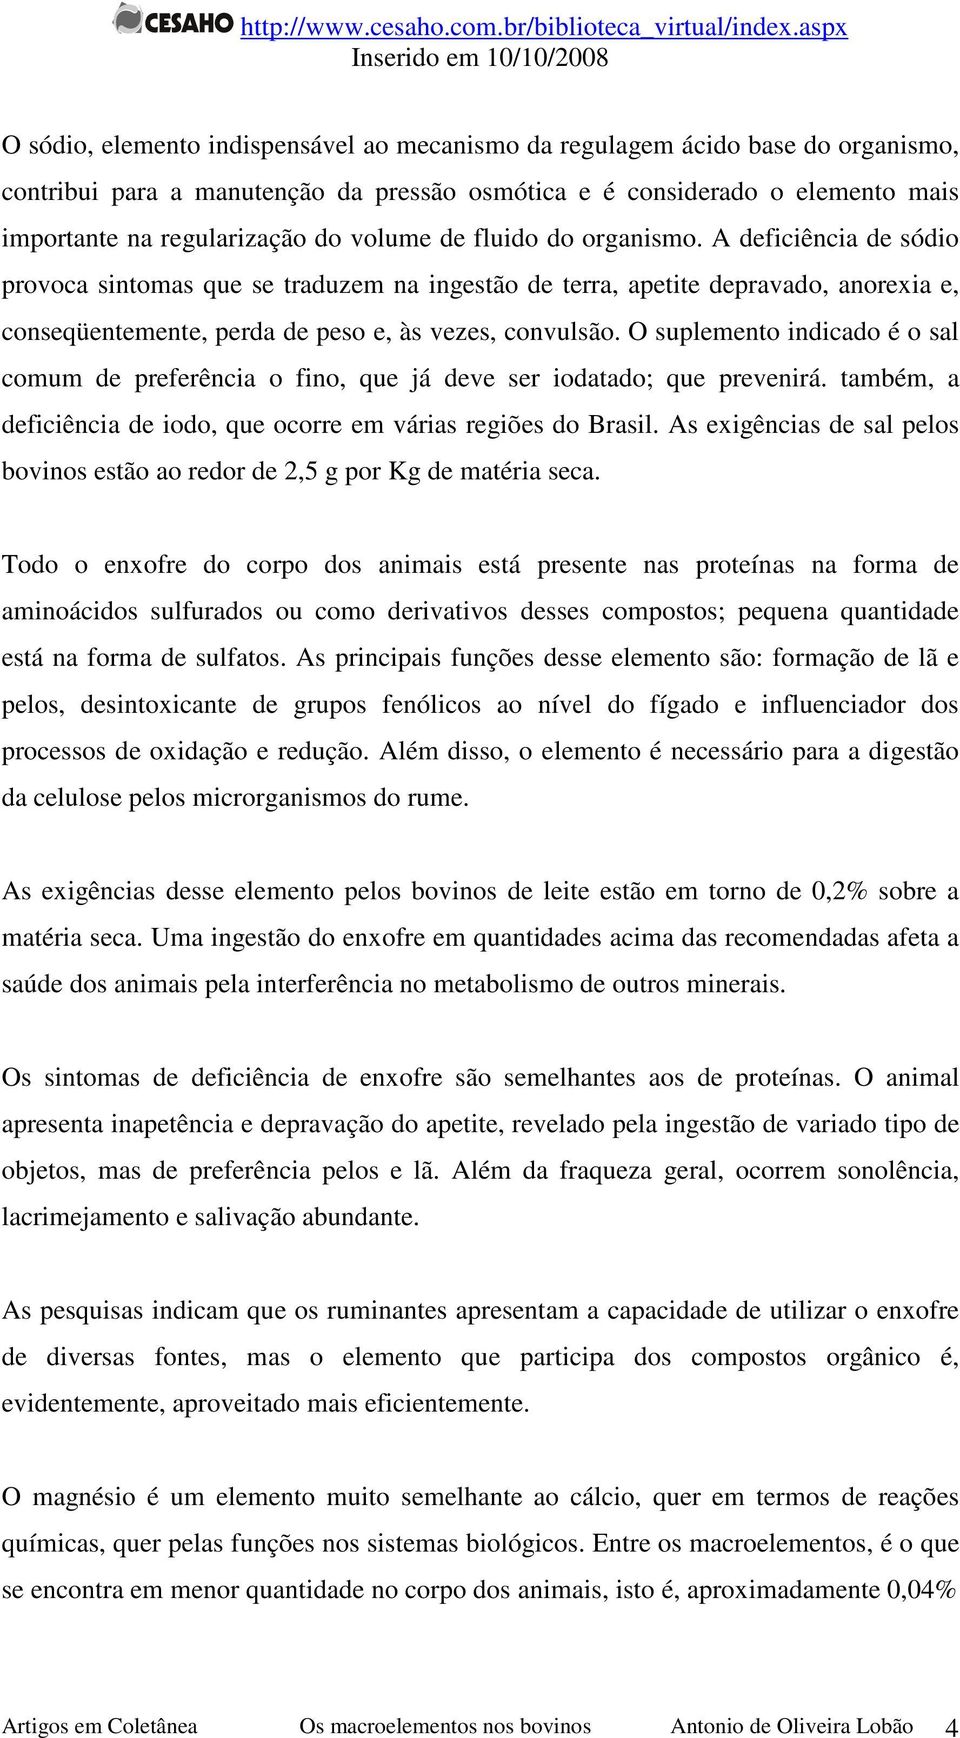 O suplemento indicado é o sal comum de preferência o fino, que já deve ser iodatado; que prevenirá. também, a deficiência de iodo, que ocorre em várias regiões do Brasil.